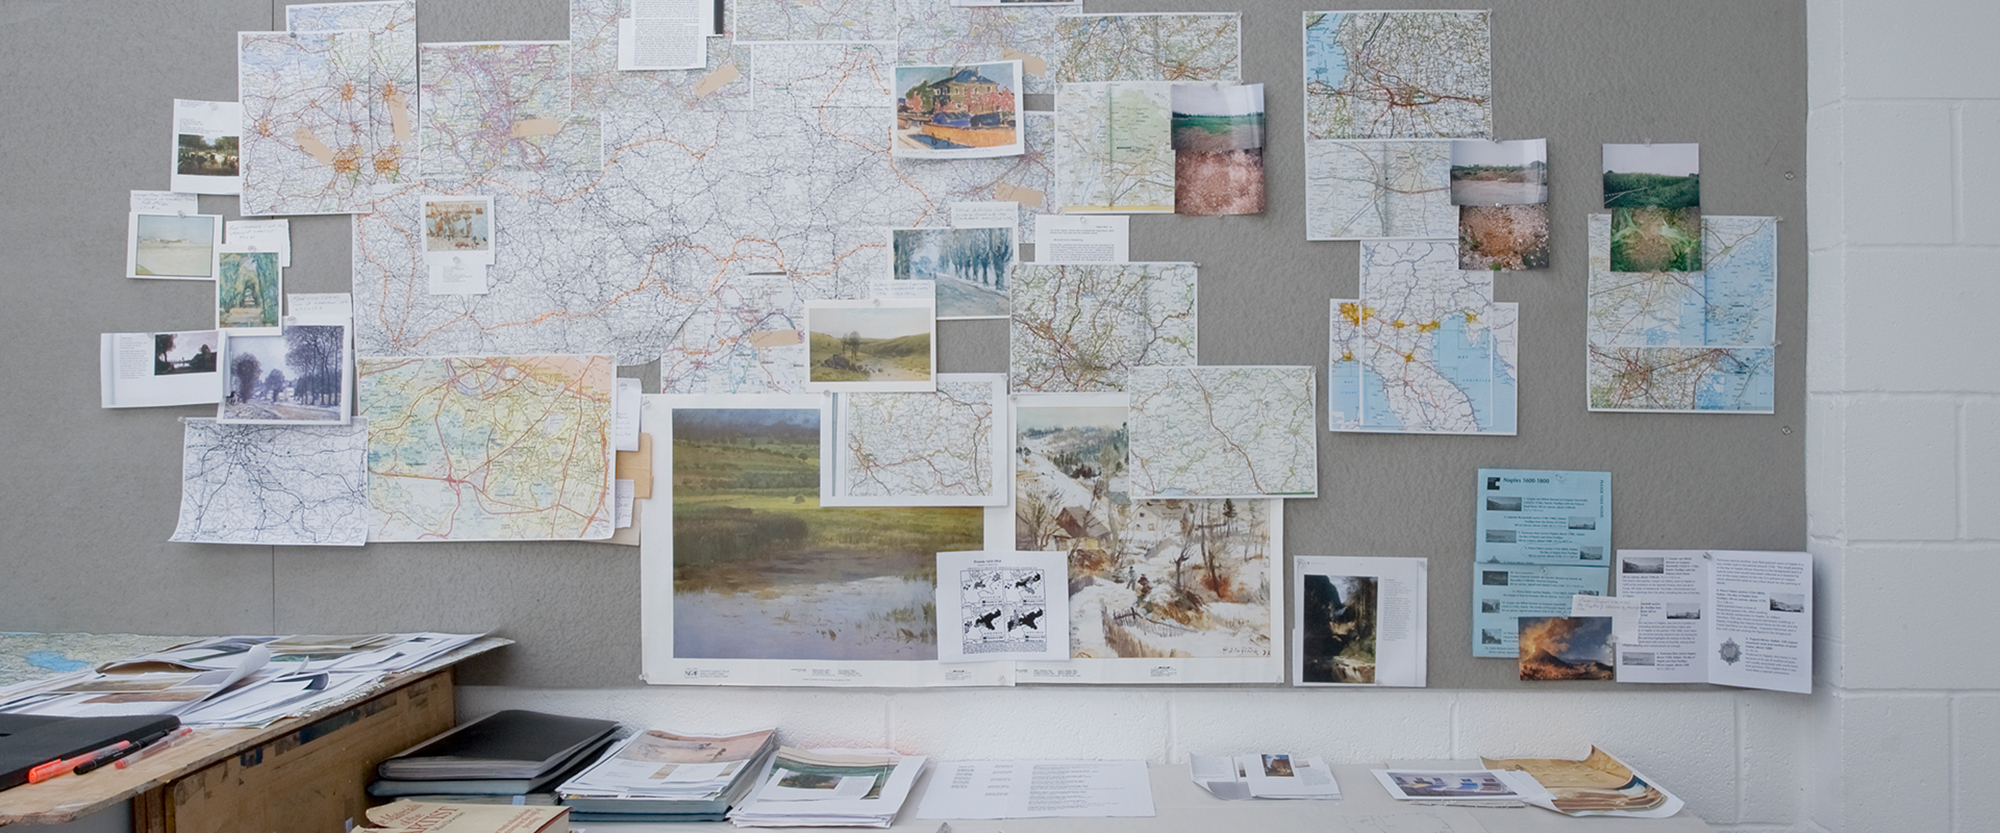 Arbeitswand im Studio der Künstlerin mit Landkarten und Fotos von den Orten, an denen die Erden für die "Landscape Paintings" gesammelt wurden, sowie dazugehörige Referenzgemälde.